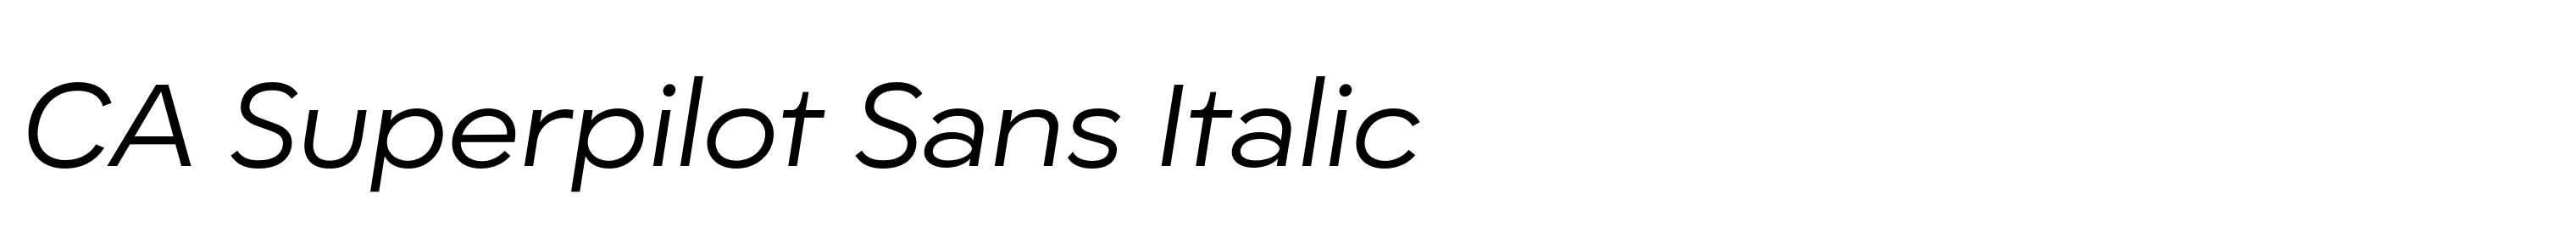 CA Superpilot Sans Italic